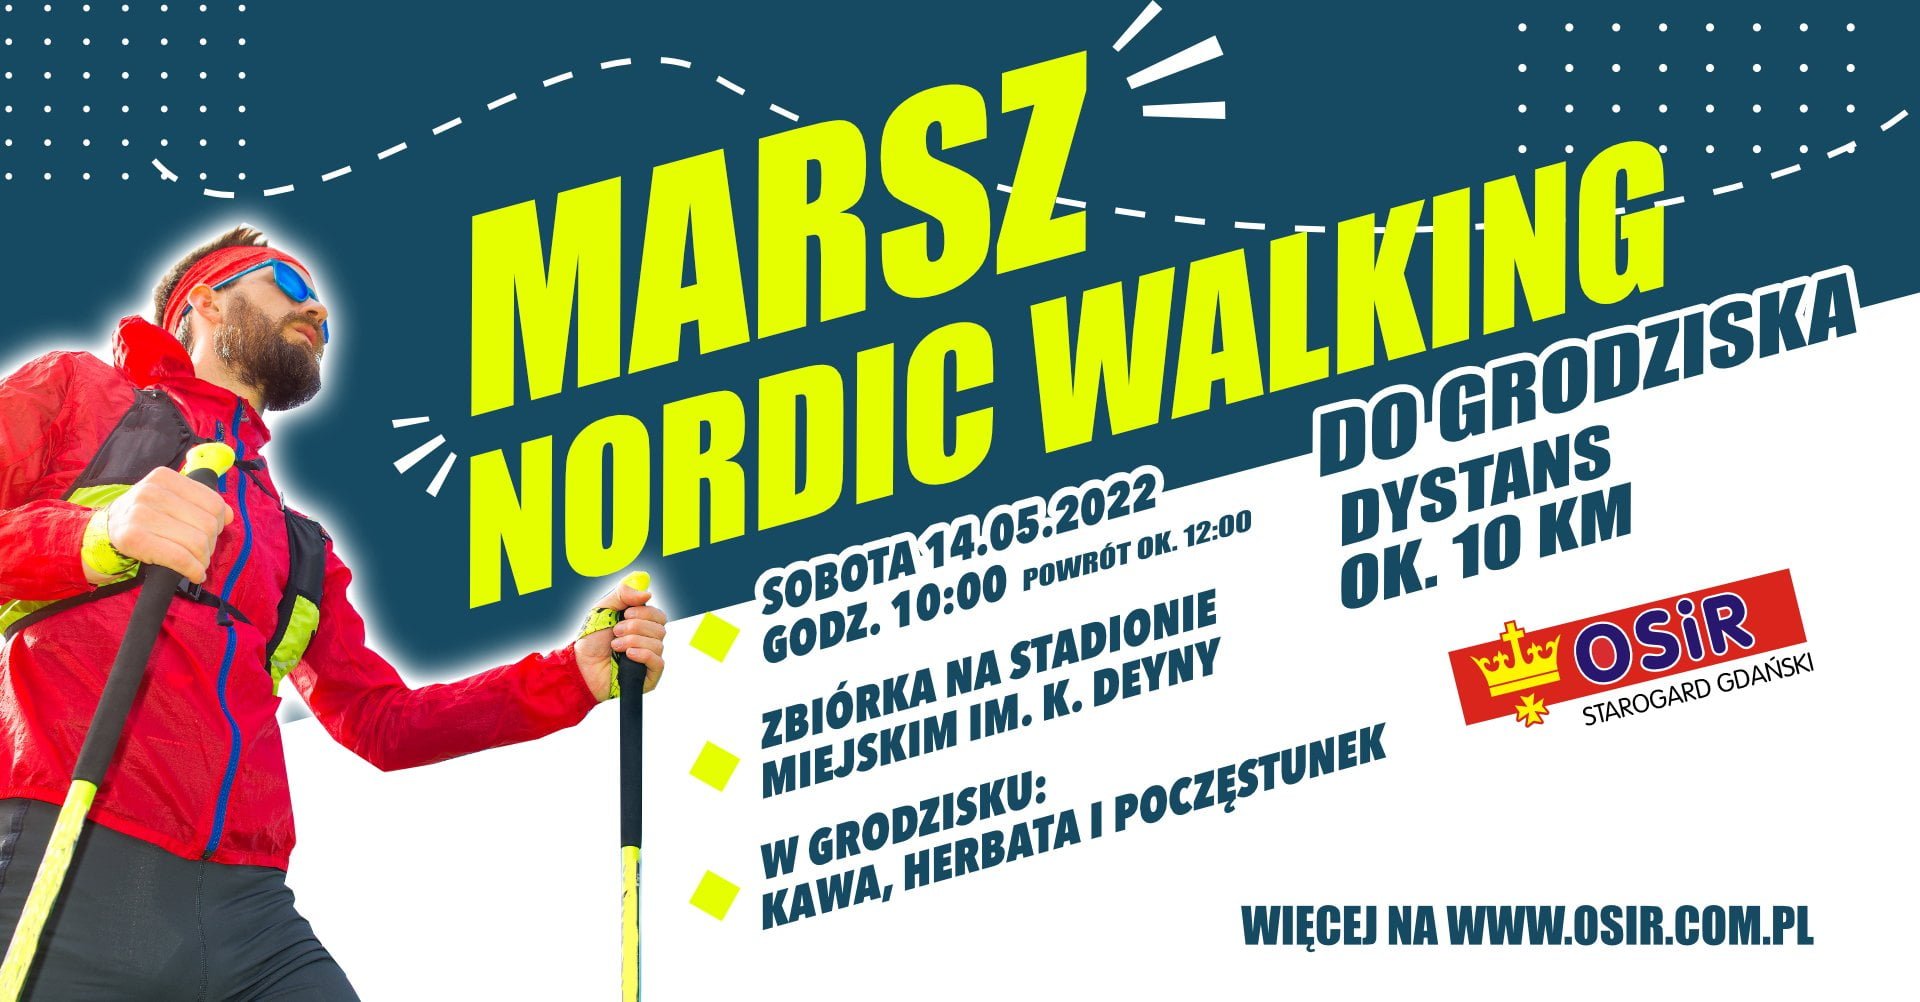 MARSZ NORDIC WALKING – 14.05.2022